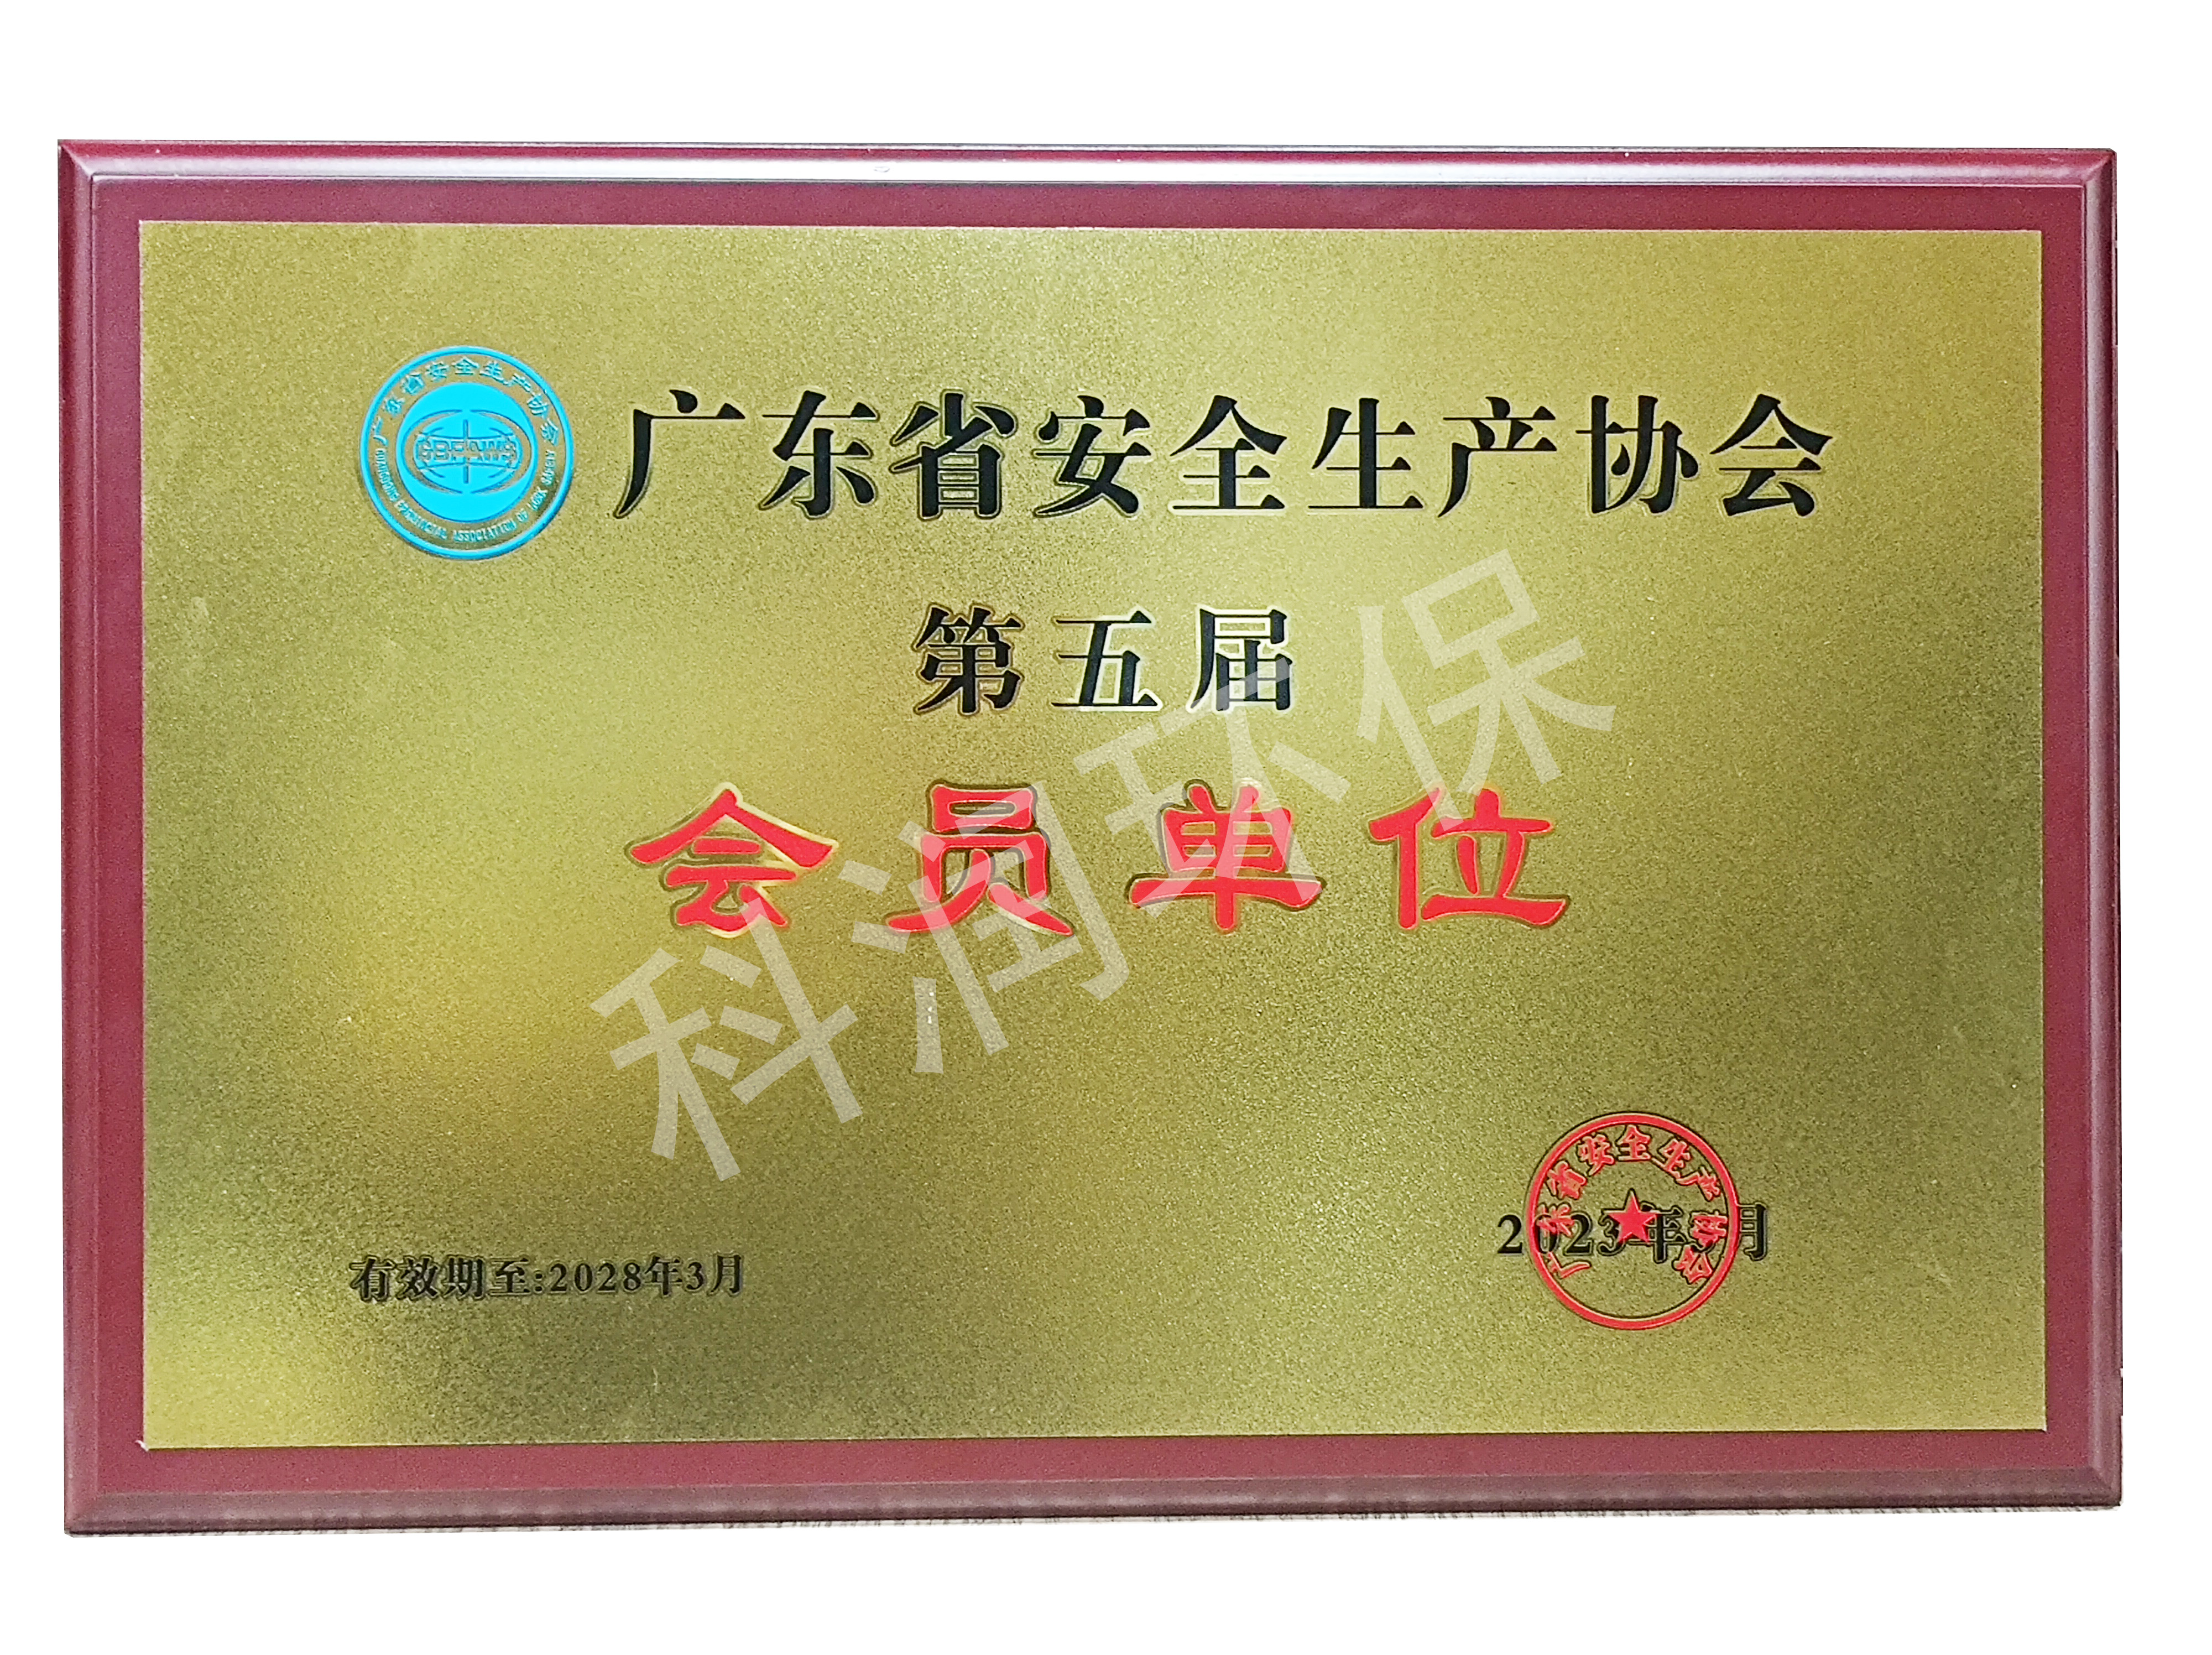 廣東省安全生產協會第五屆會員單位